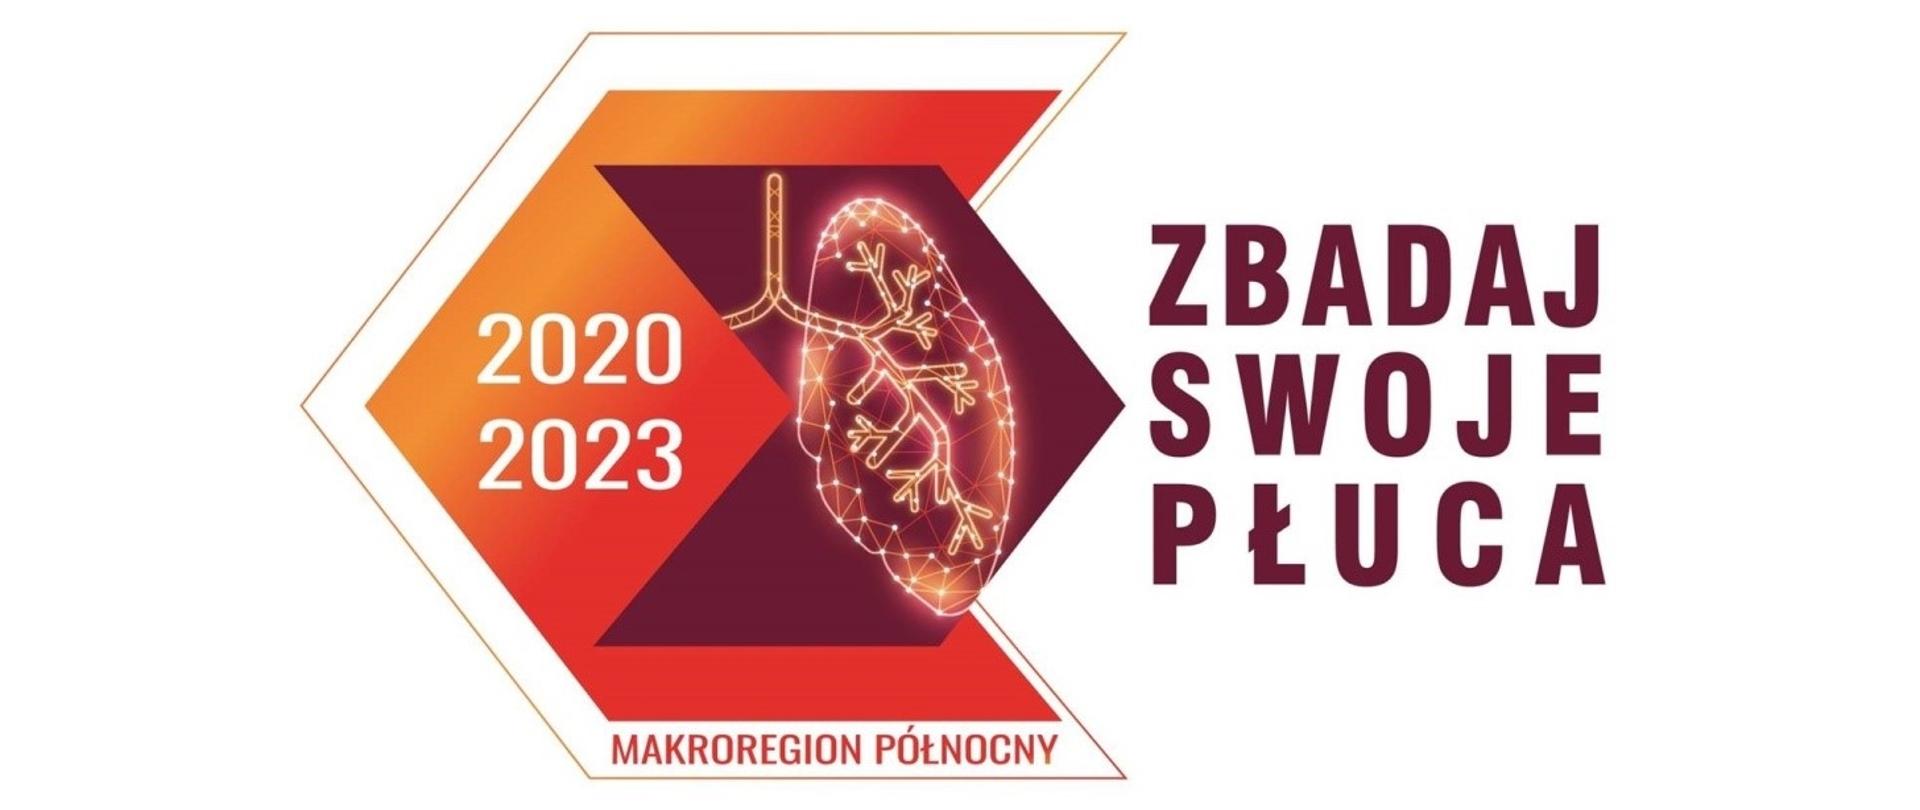 Ogólnopolski Program Wczesnego Wykrywania Raka Płuca (WWRP) za Pomocą Niskodawkowej Tomografii Komputerowej (NDTK) – prowadzony dla makroregionu północnego przez Uniwersyteckie Centrum Kliniczne w Gdańsku (UCK).